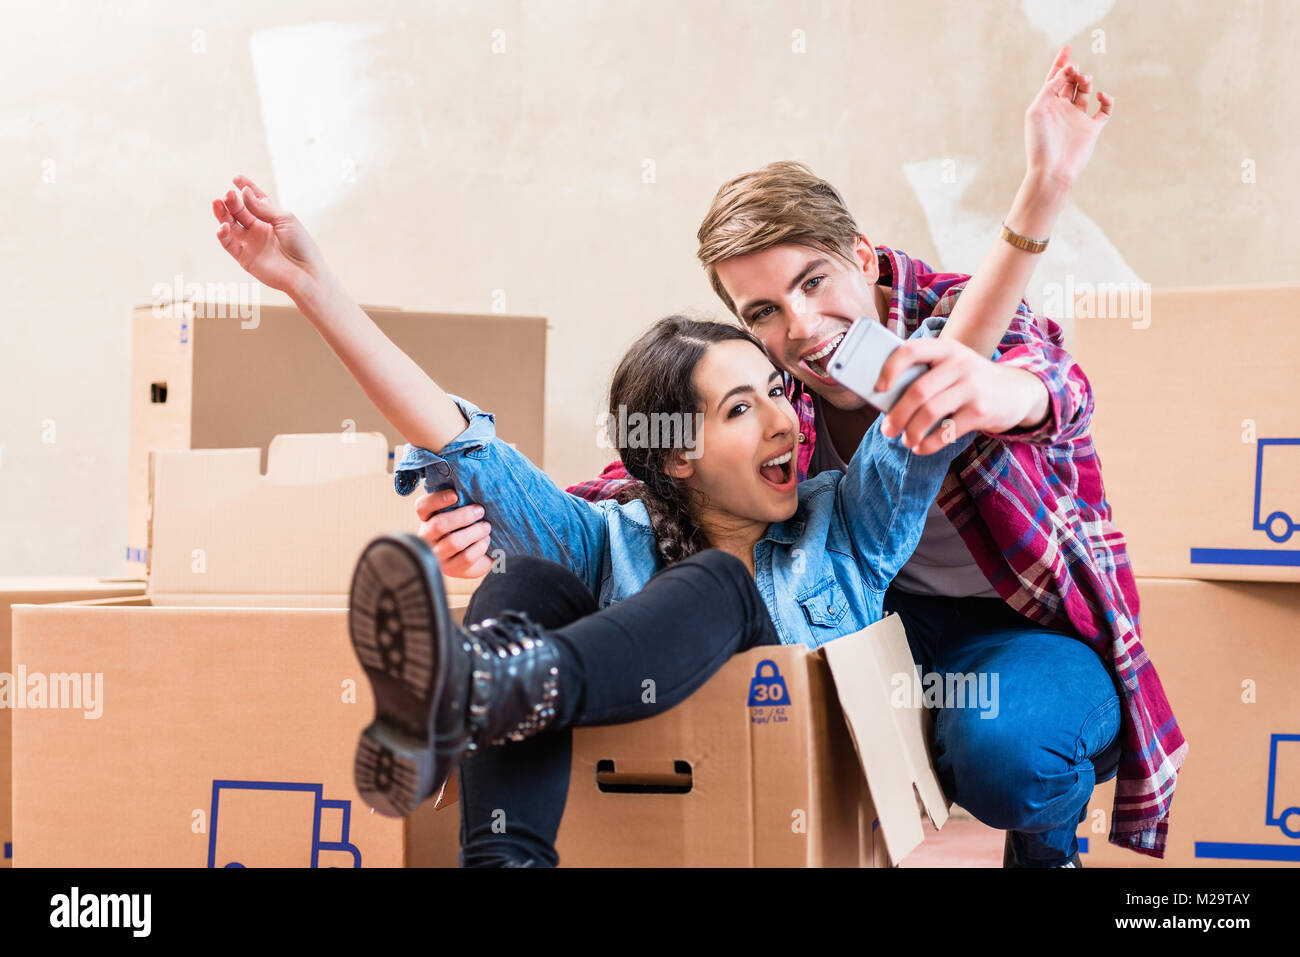 Felice giovane uomo e donna in posa mentre si effettua una selfie circondato dalle caselle dopo lo spostamento in una nuova casa Foto Stock